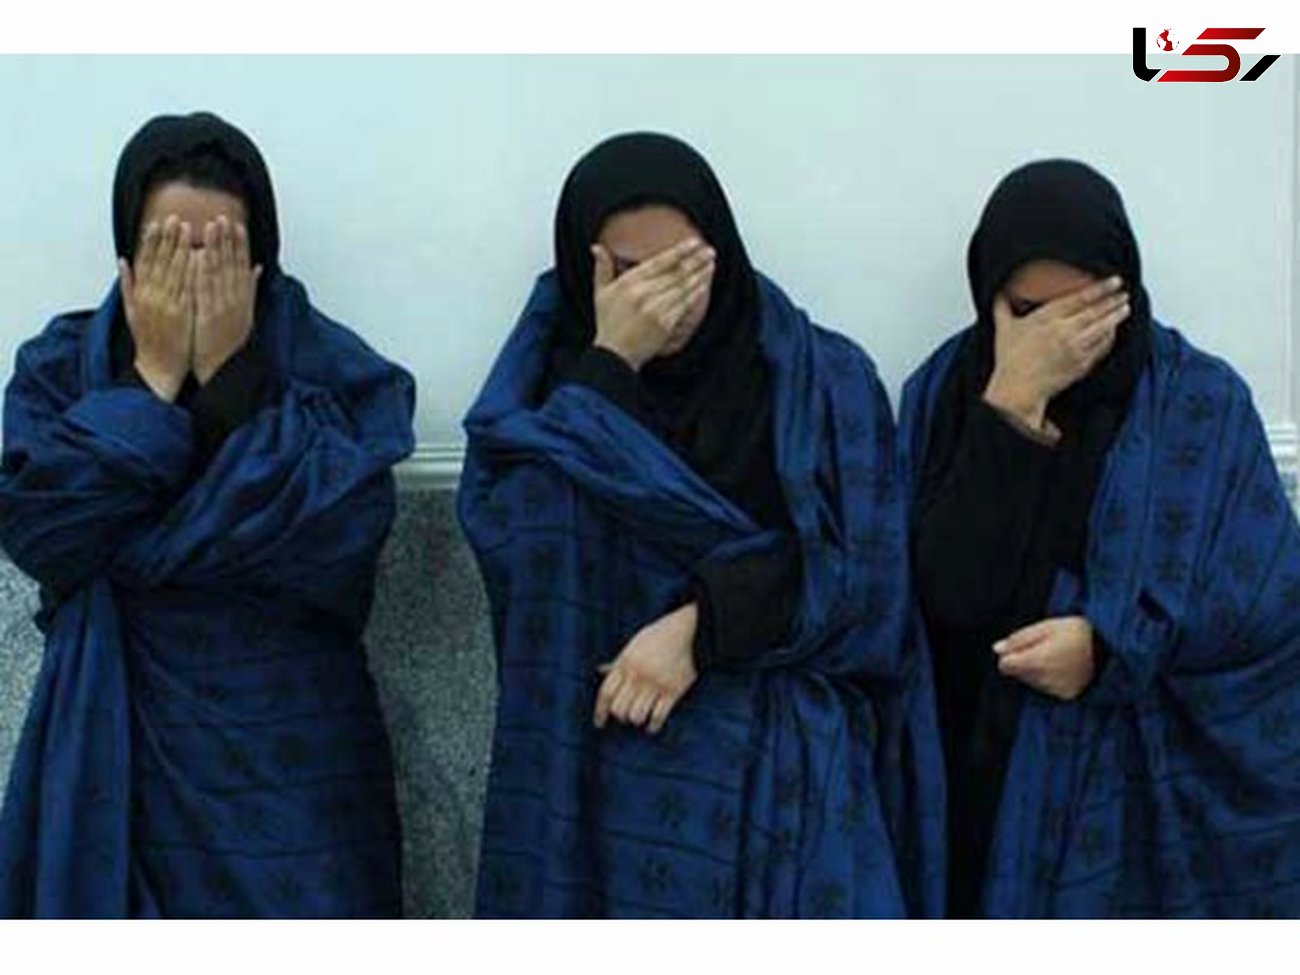 این 3 زن اتوبوس های بی آر تی تهران را نا امن کرده بودند/ نسا 60 سال دارد !